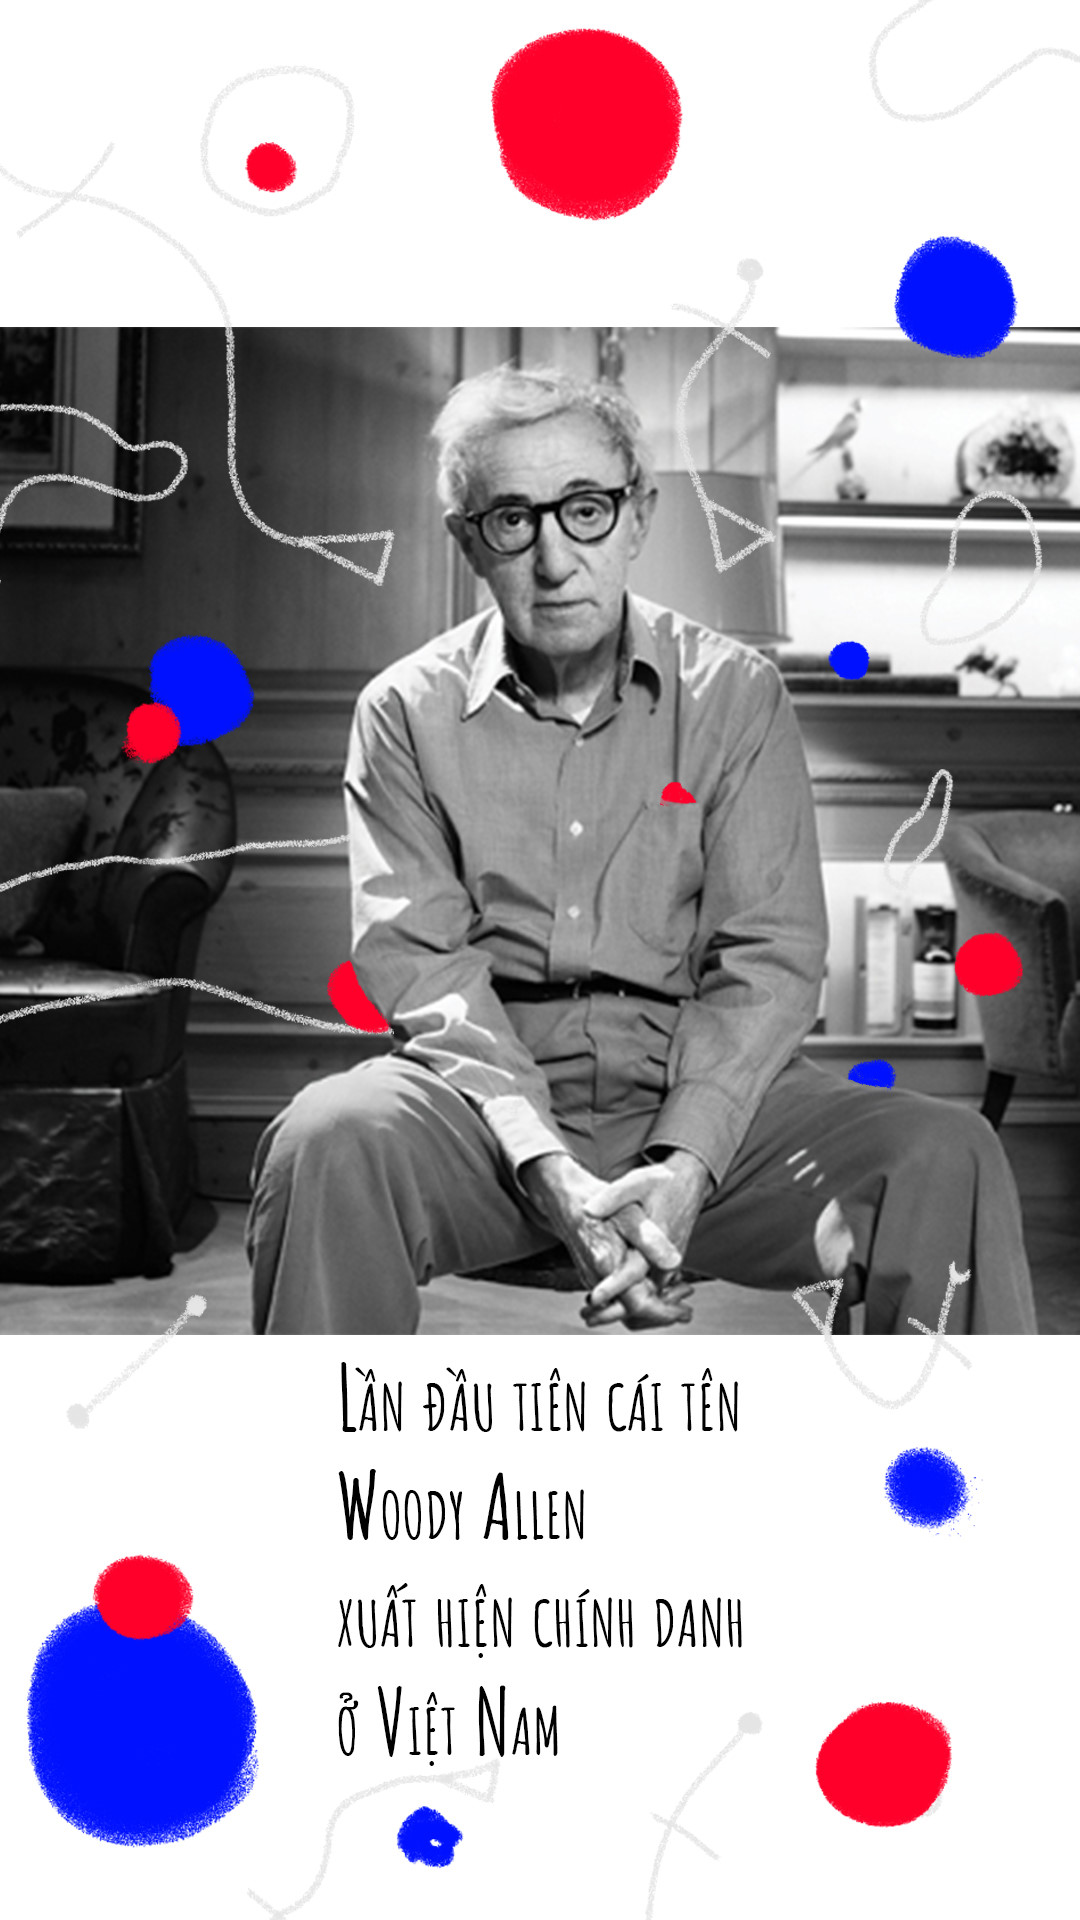 Woody Allen - ga tri thuc thich gieu nhai moi su doi hinh anh 12